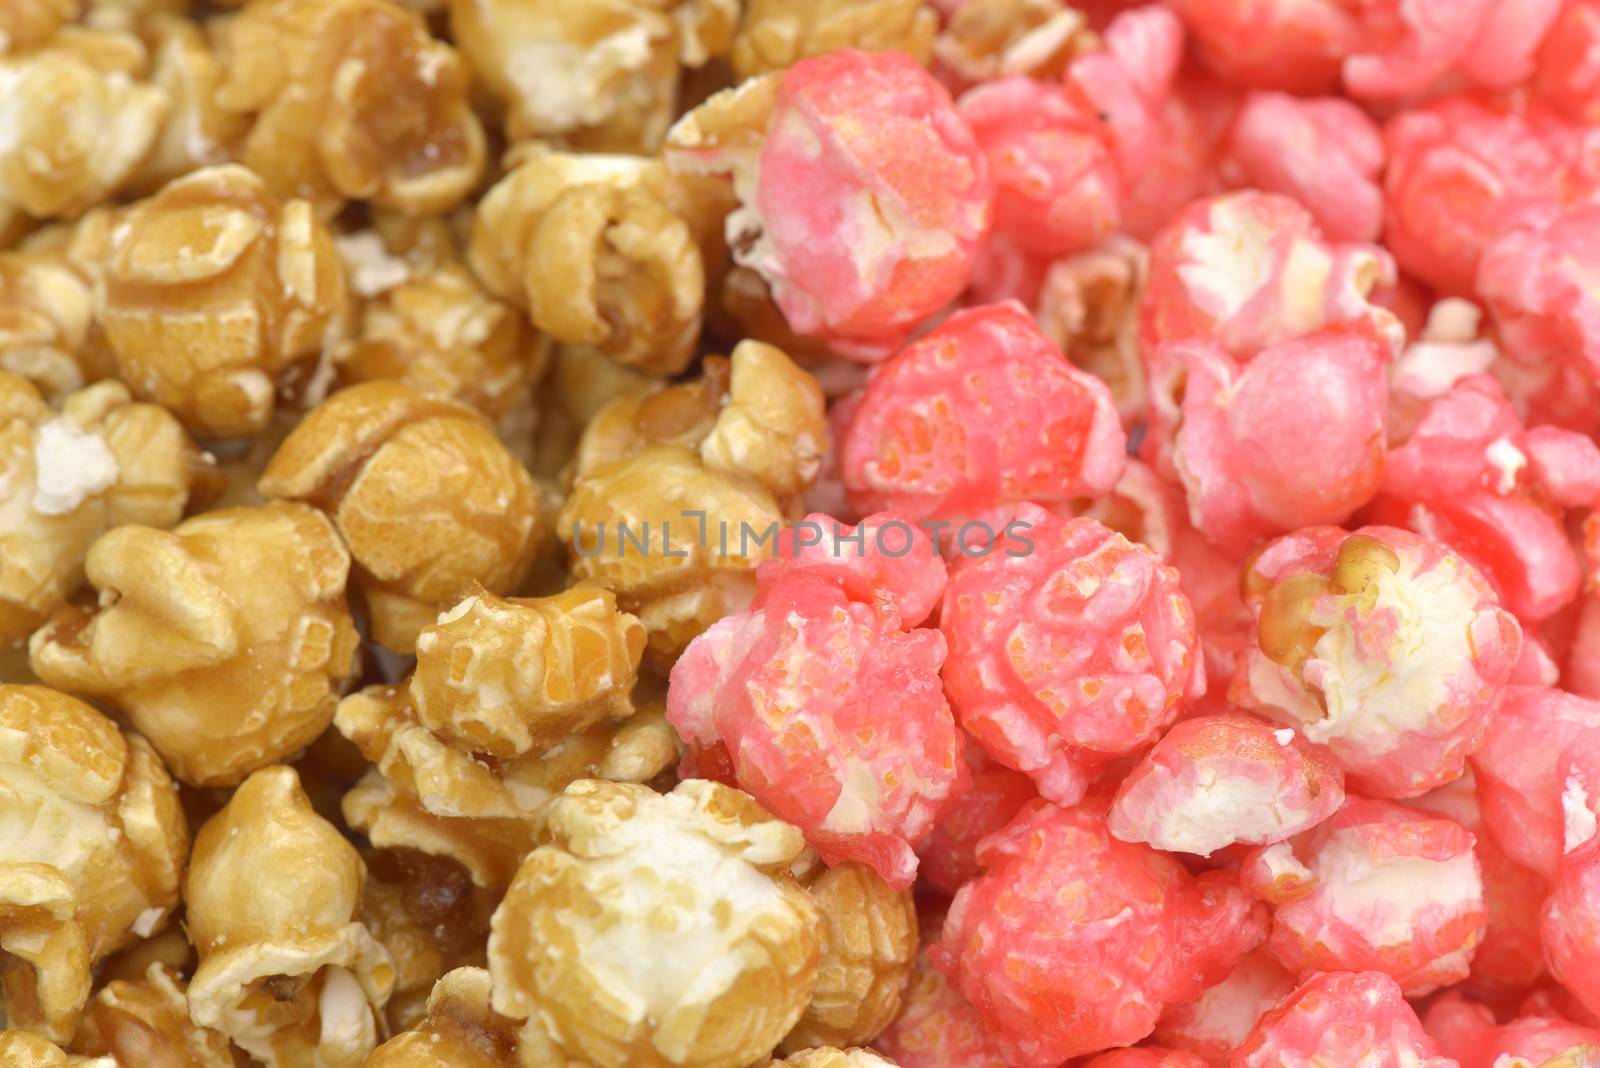 Close-up of pink and caramel popcorn

